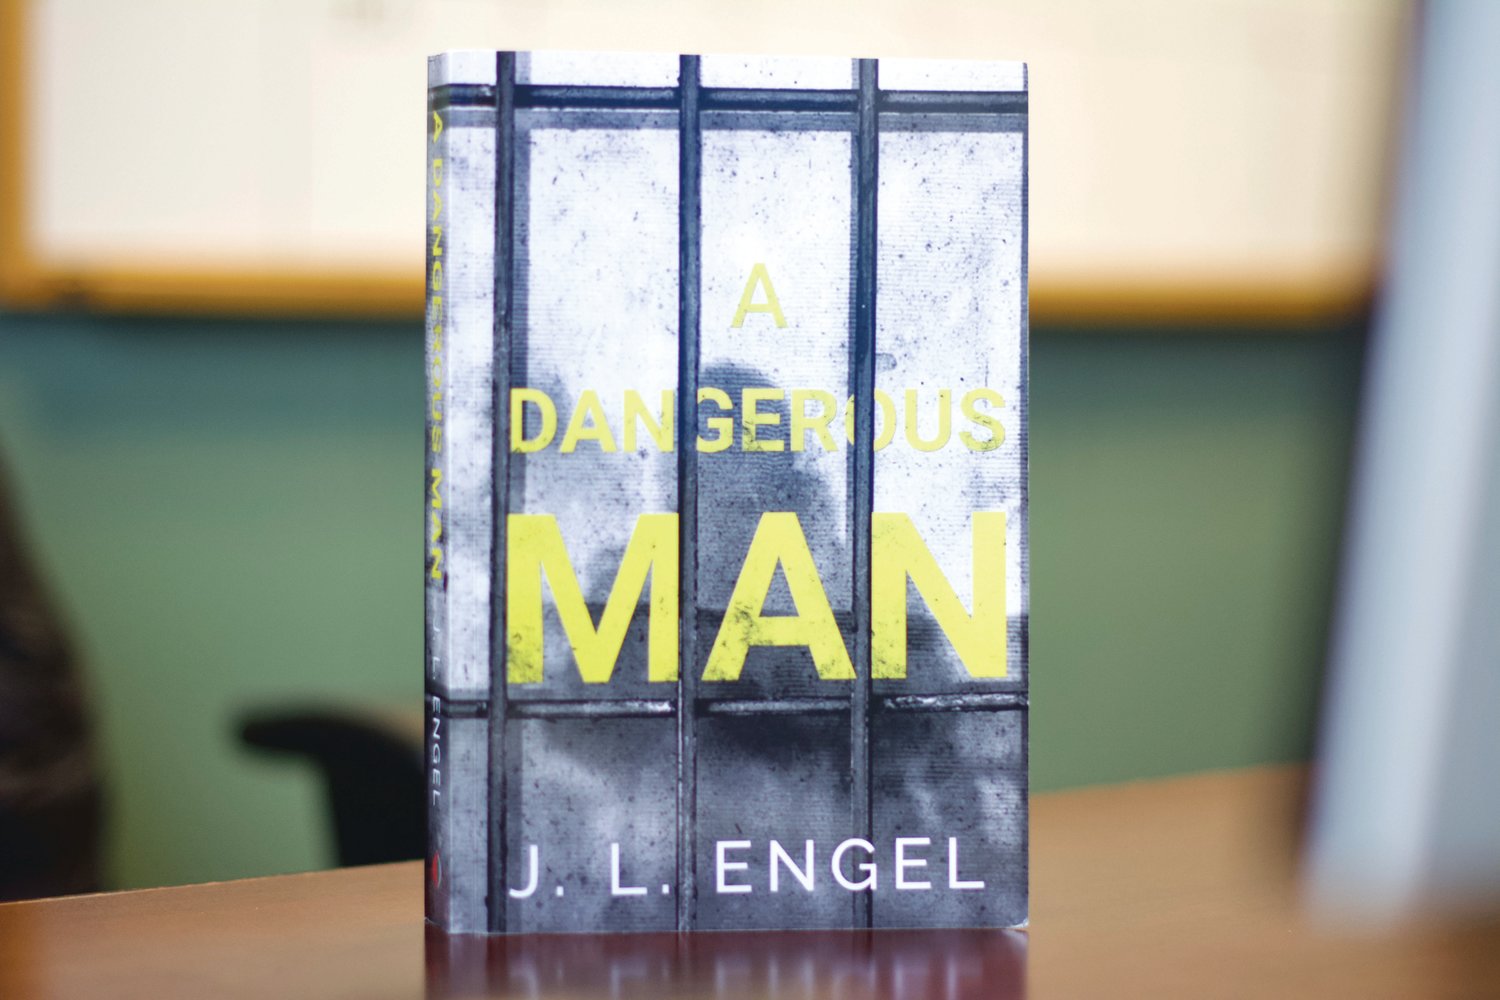 Centralia author  J.L. Engel’s debut action thriller fiction is “A Dangerous Man.”